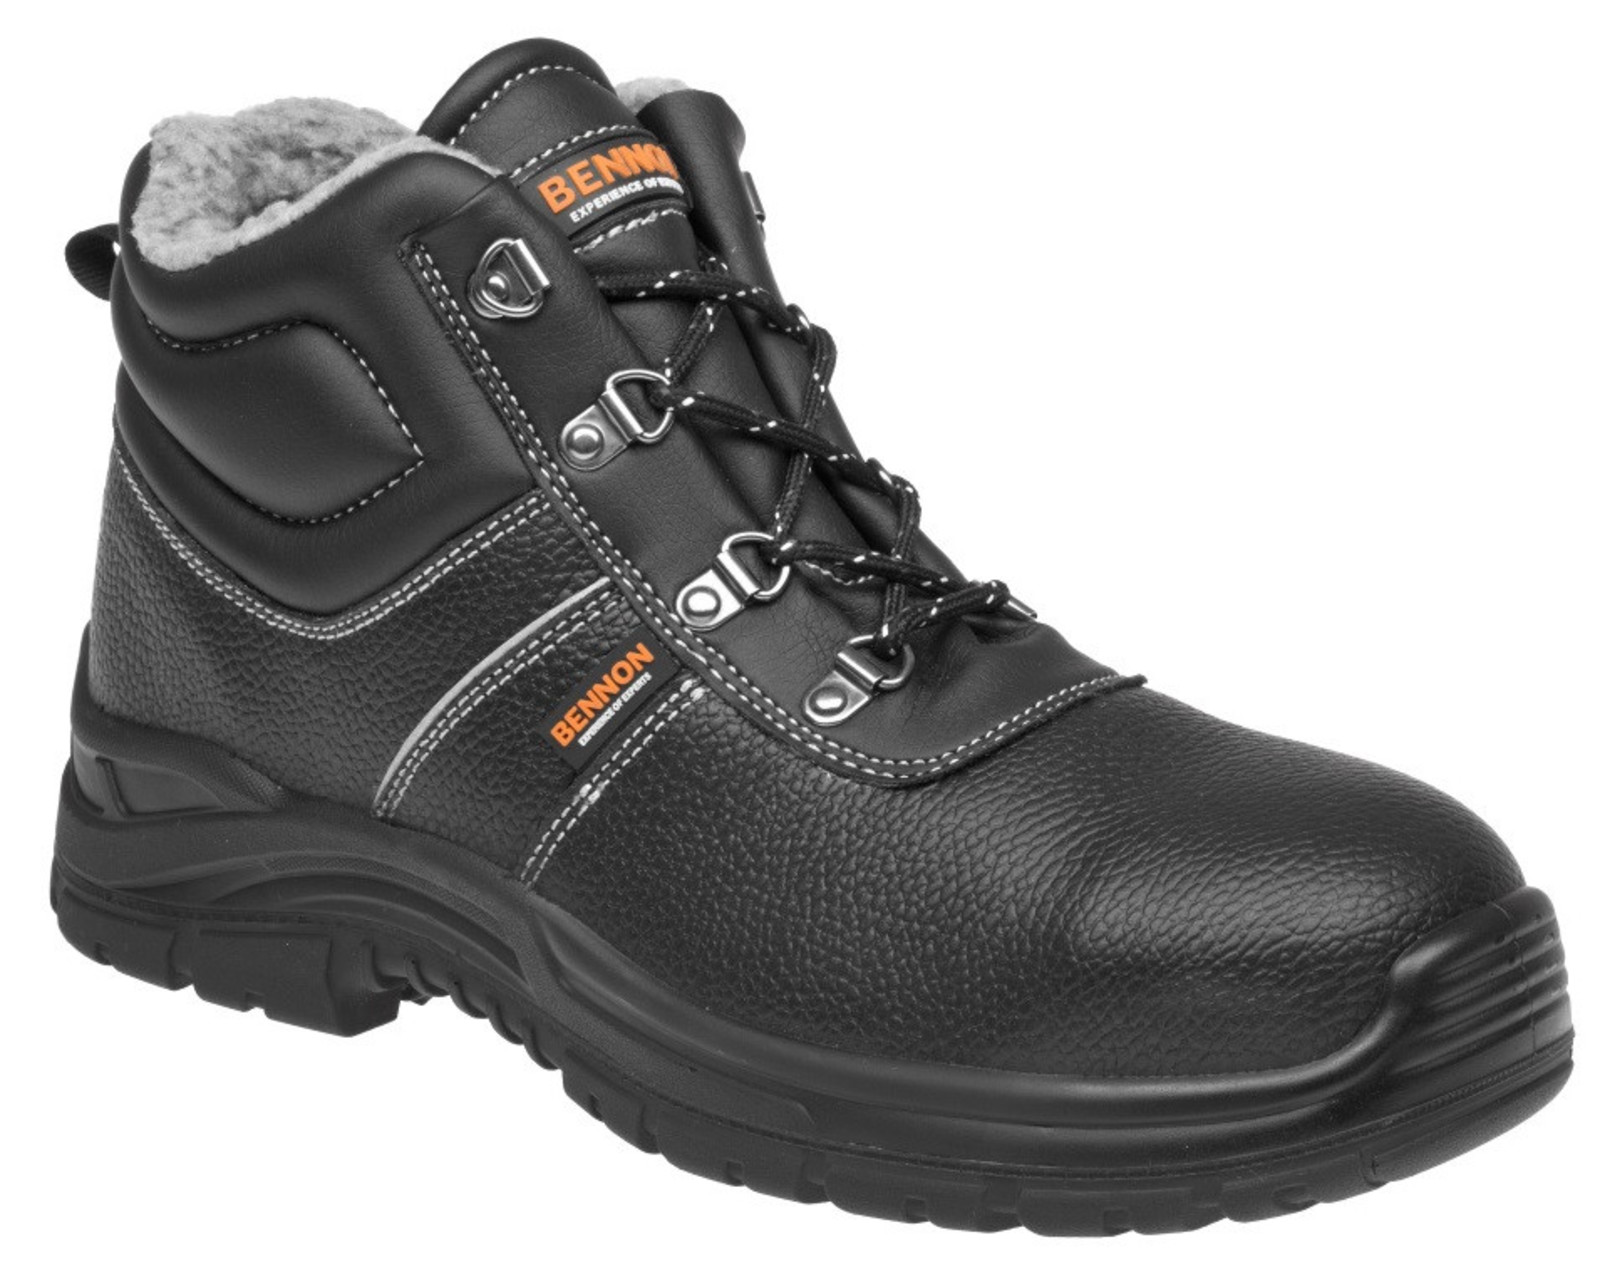 Zimná bezpečnostná obuv Bennon Basic S3 - veľkosť: 44, farba: čierna